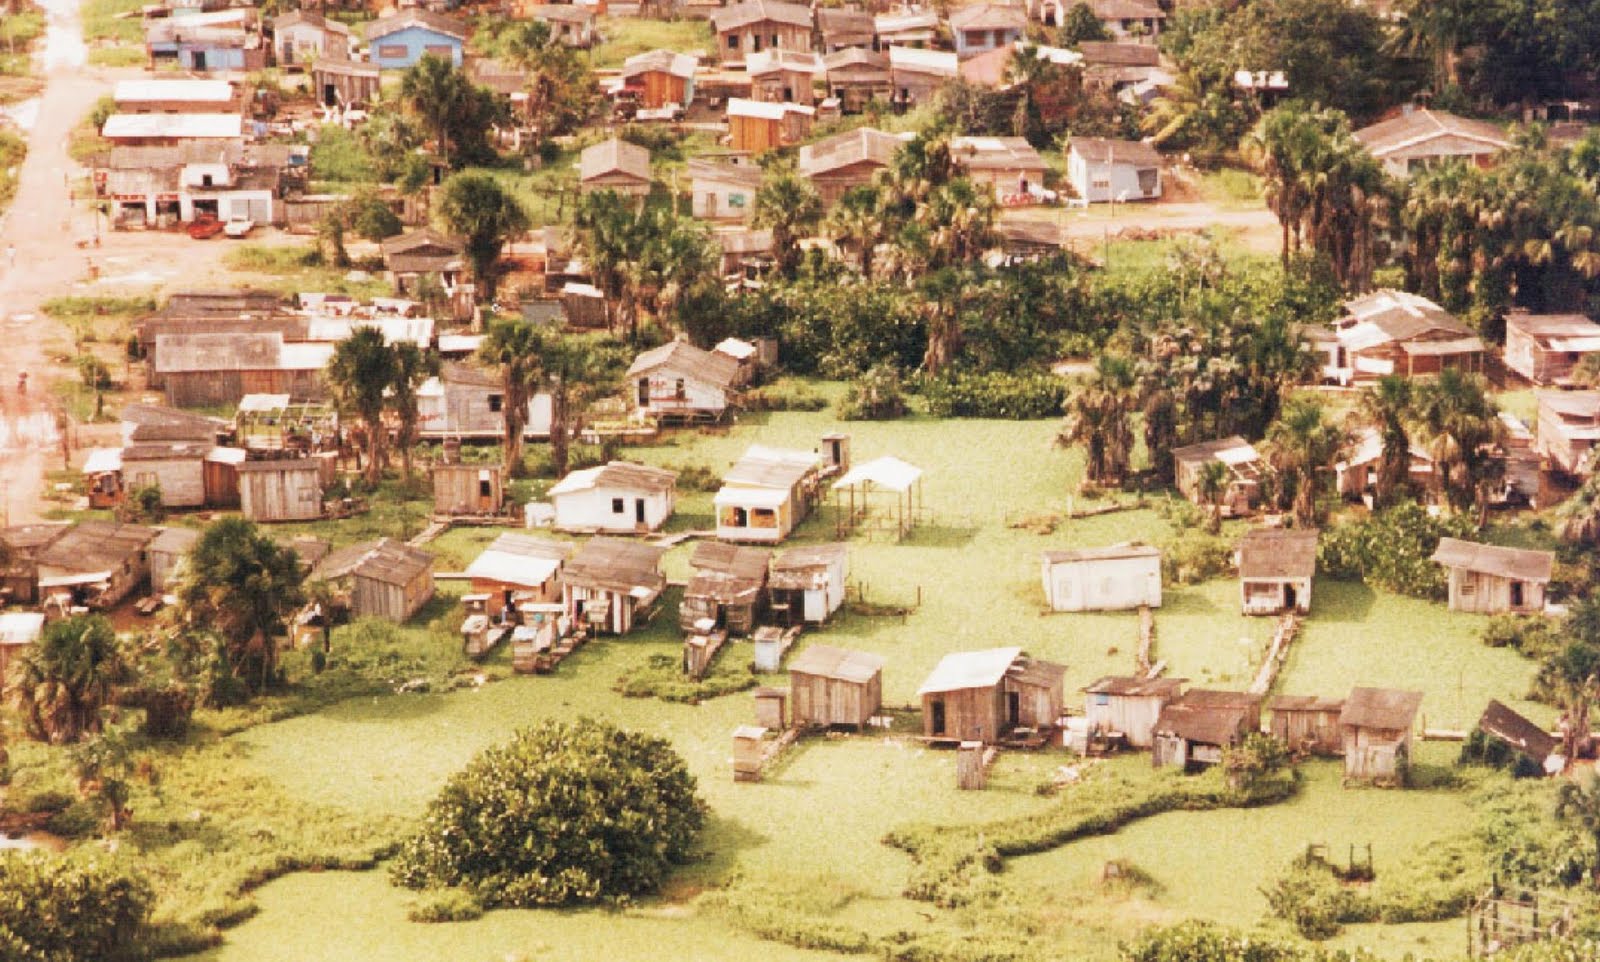 Ocupações informais em áreas de ressaca em Macapá – AP